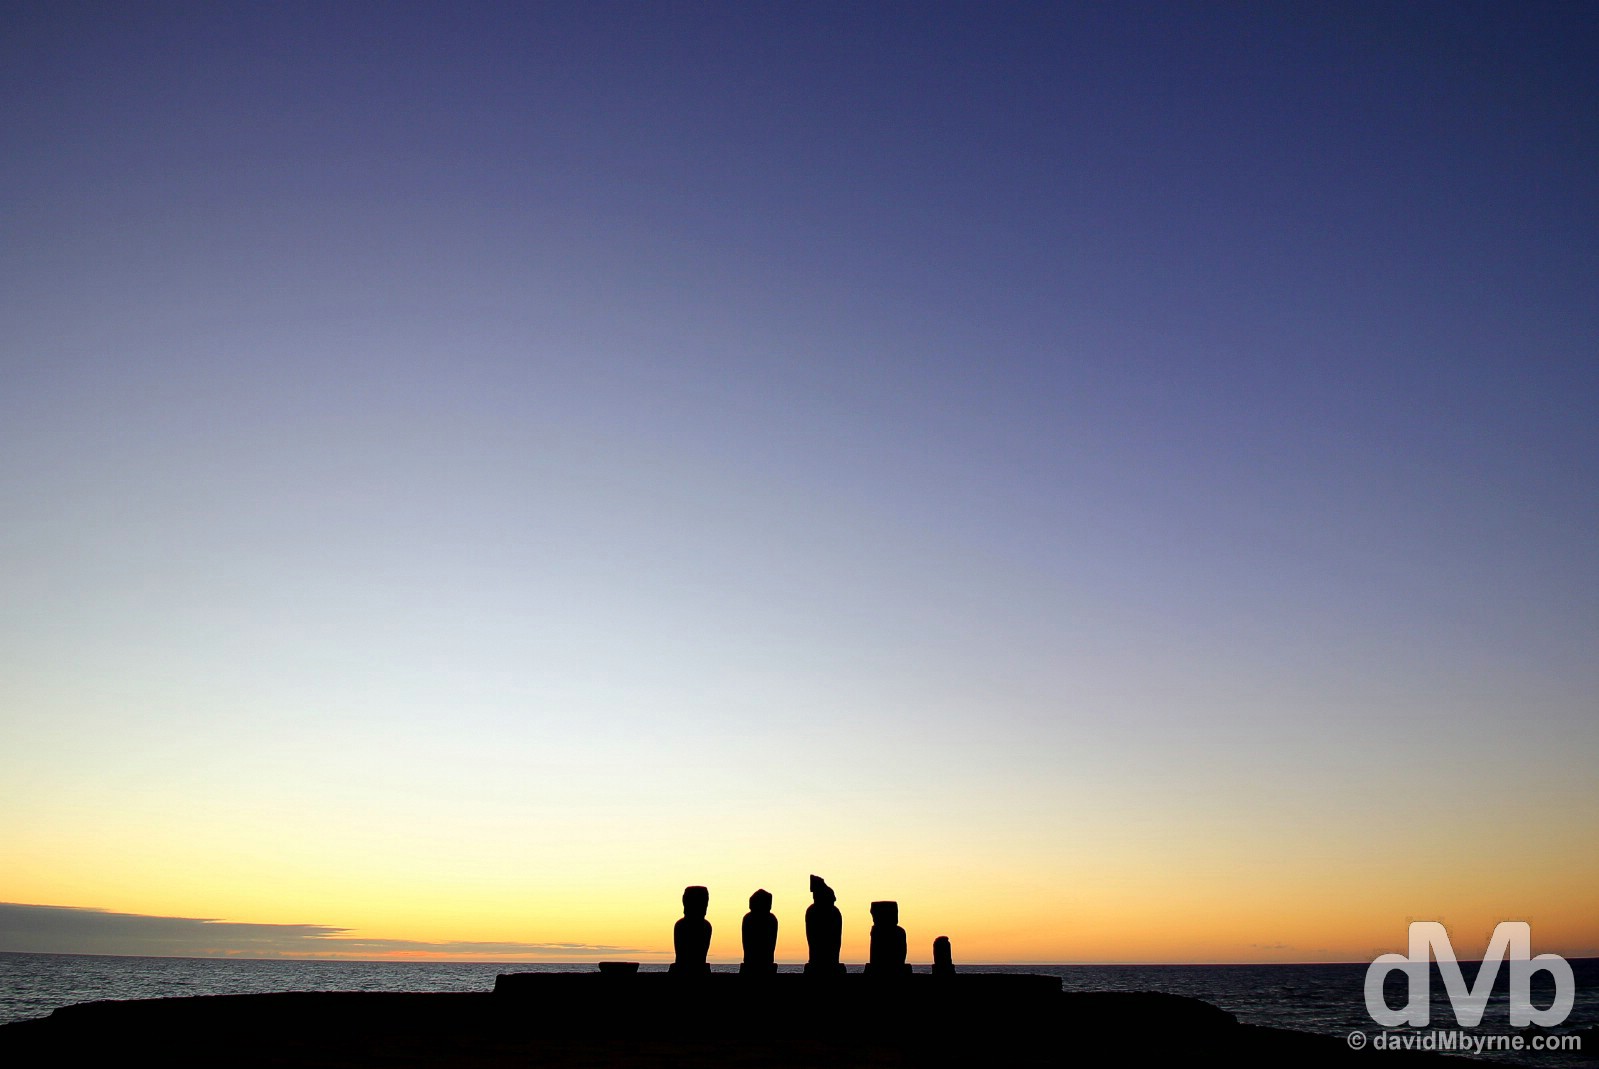 Post sunset silhouette at Tahai, Easter Island. September 30, 2015. 